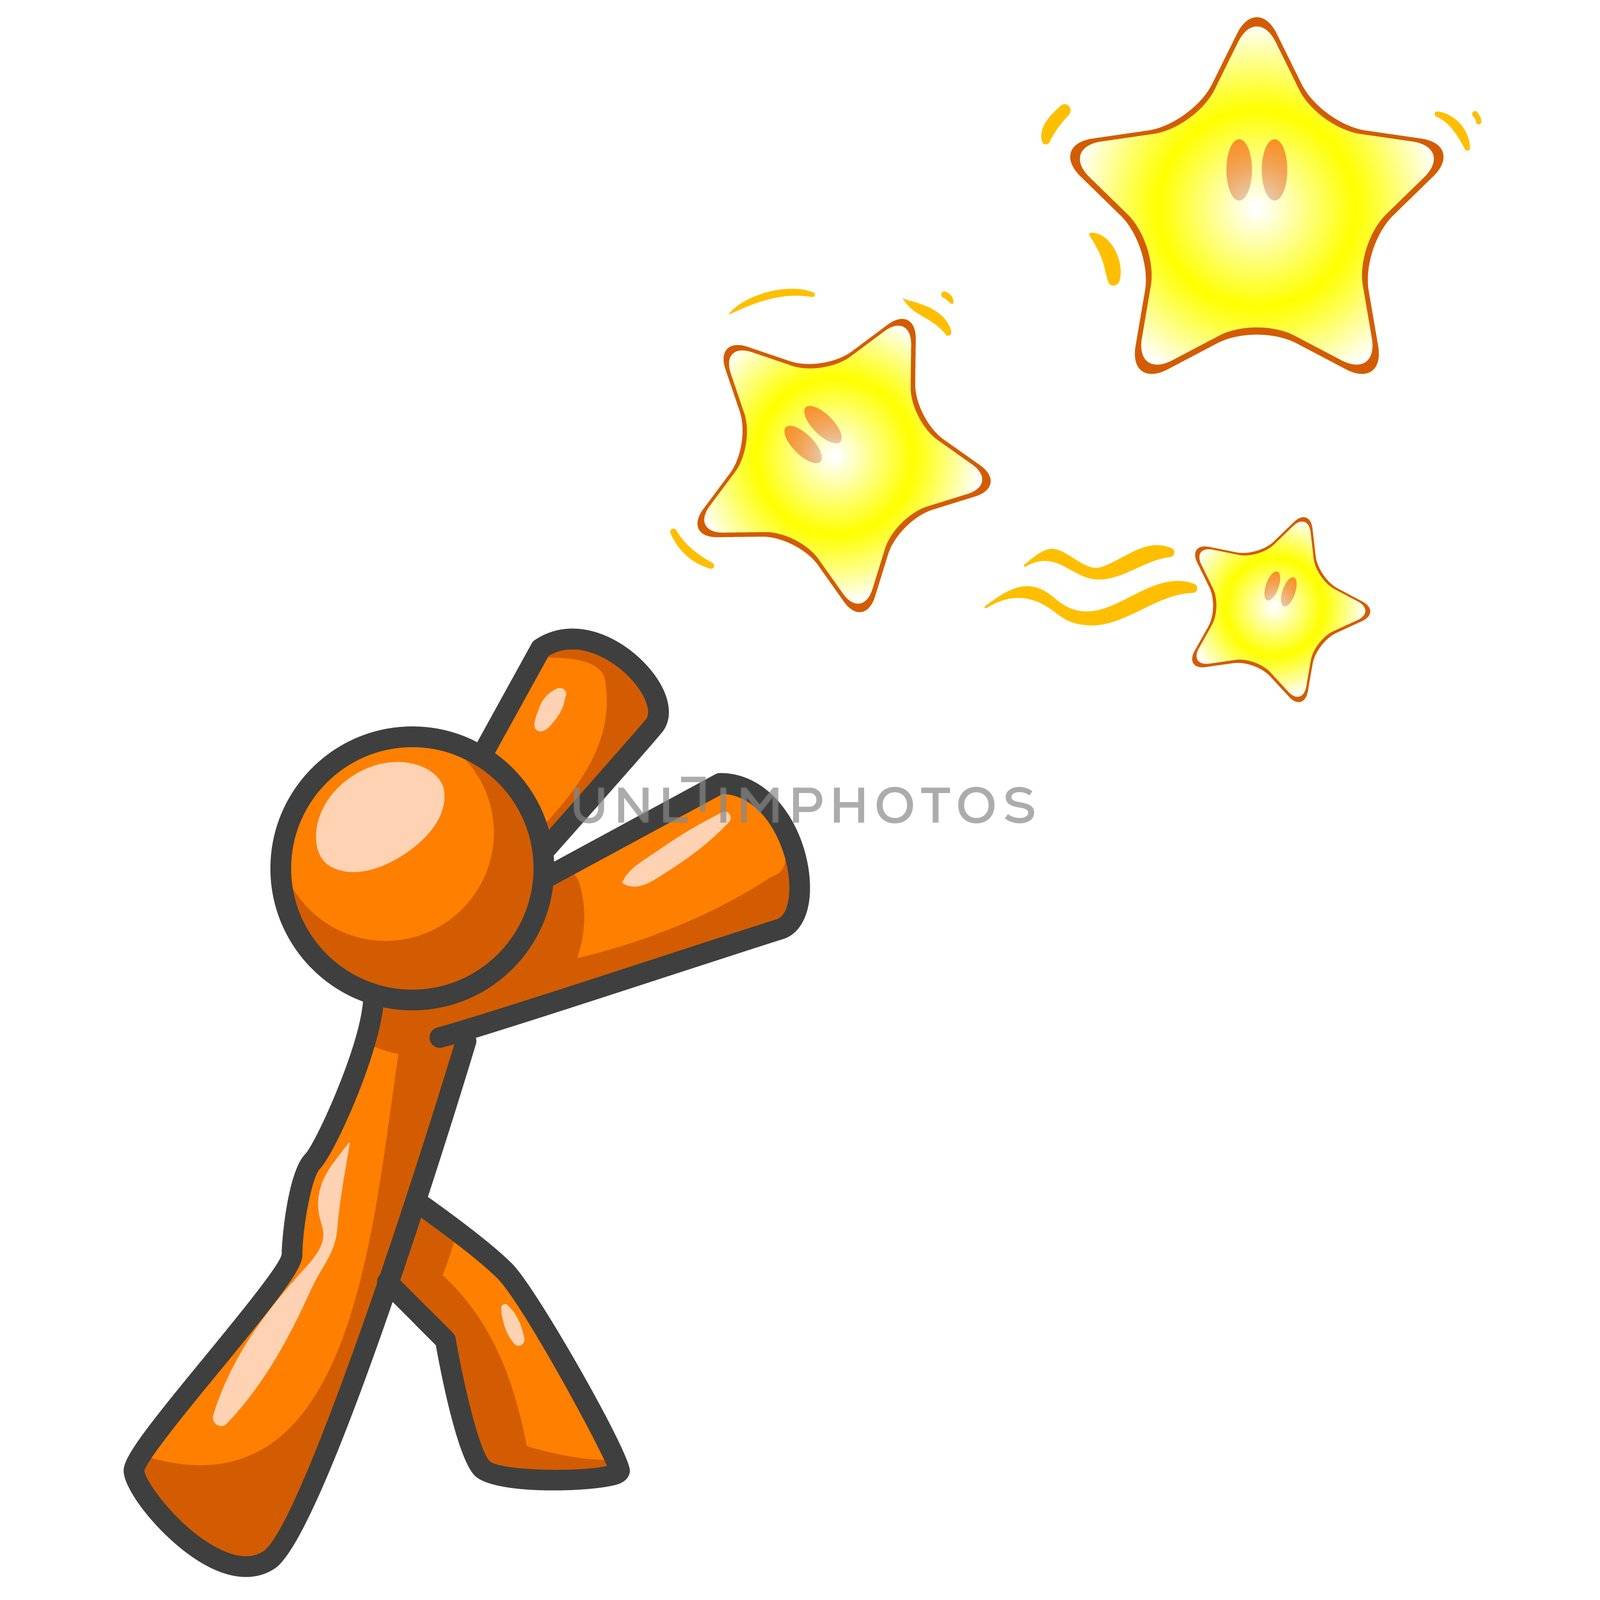 Orange Man Reaching for Stars by LeoBlanchette